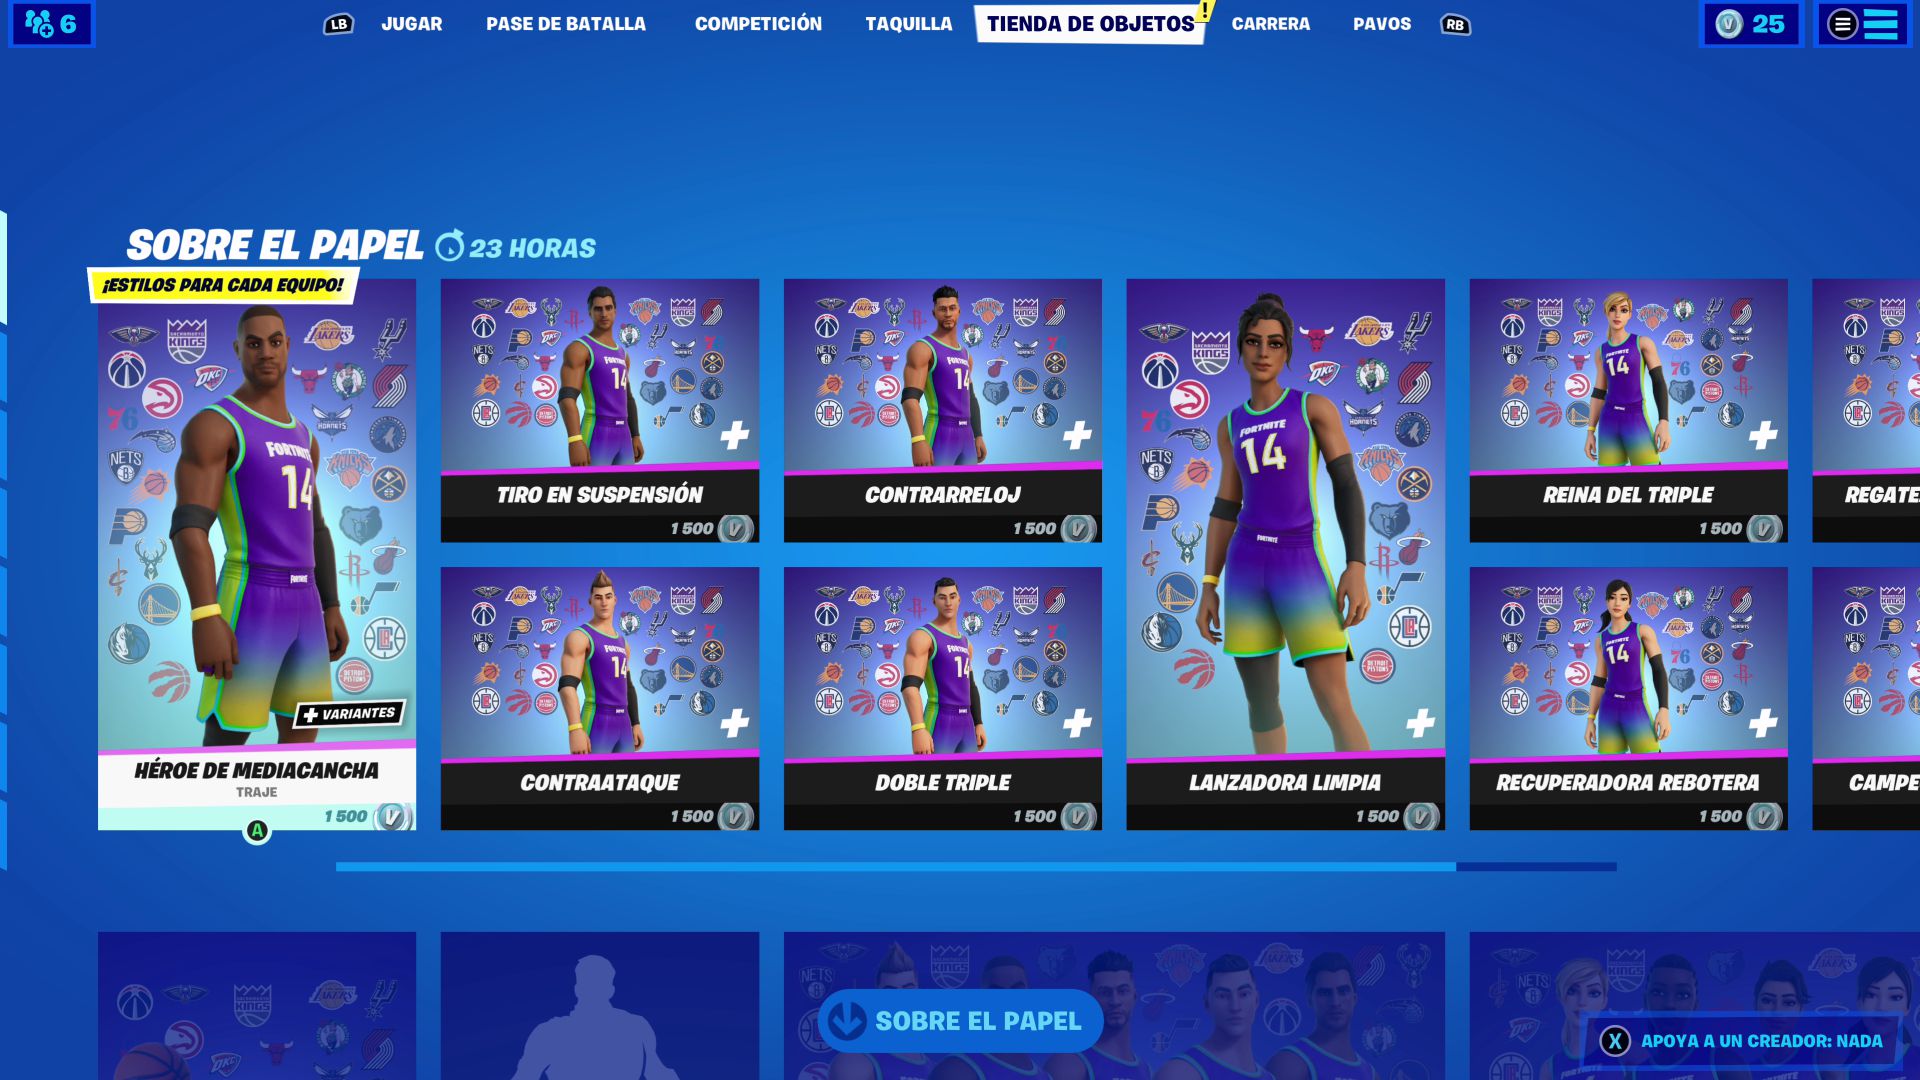 Repetirse servidor milla nautica Fortnite: skins de la NBA ya disponibles; precio y contenidos - MeriStation